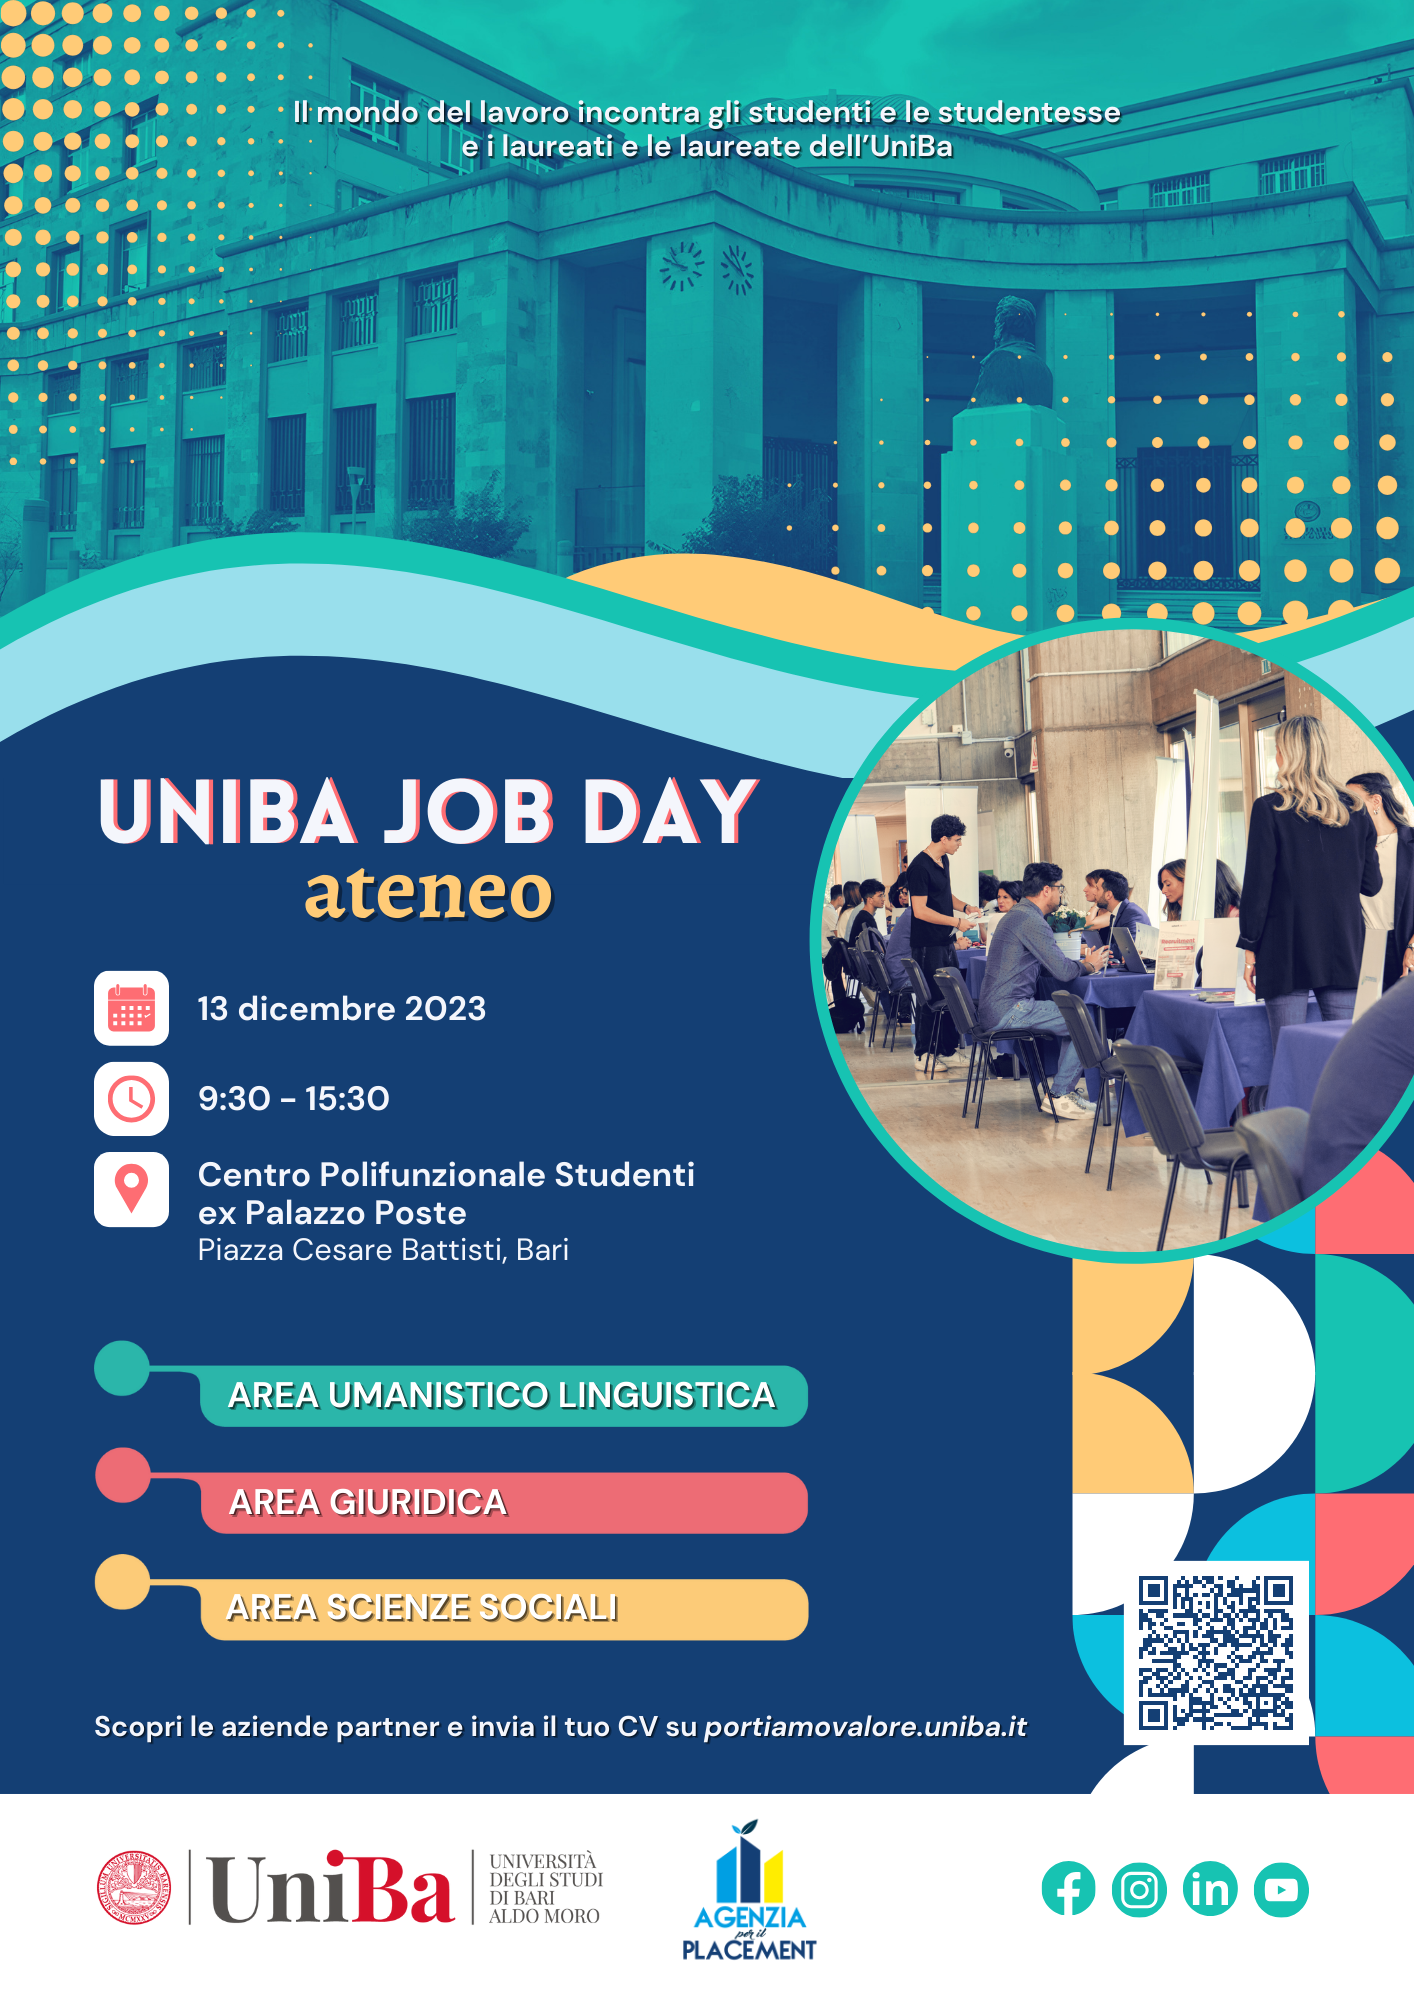 2^ edizione dell’UniBa Job Day Ateneo